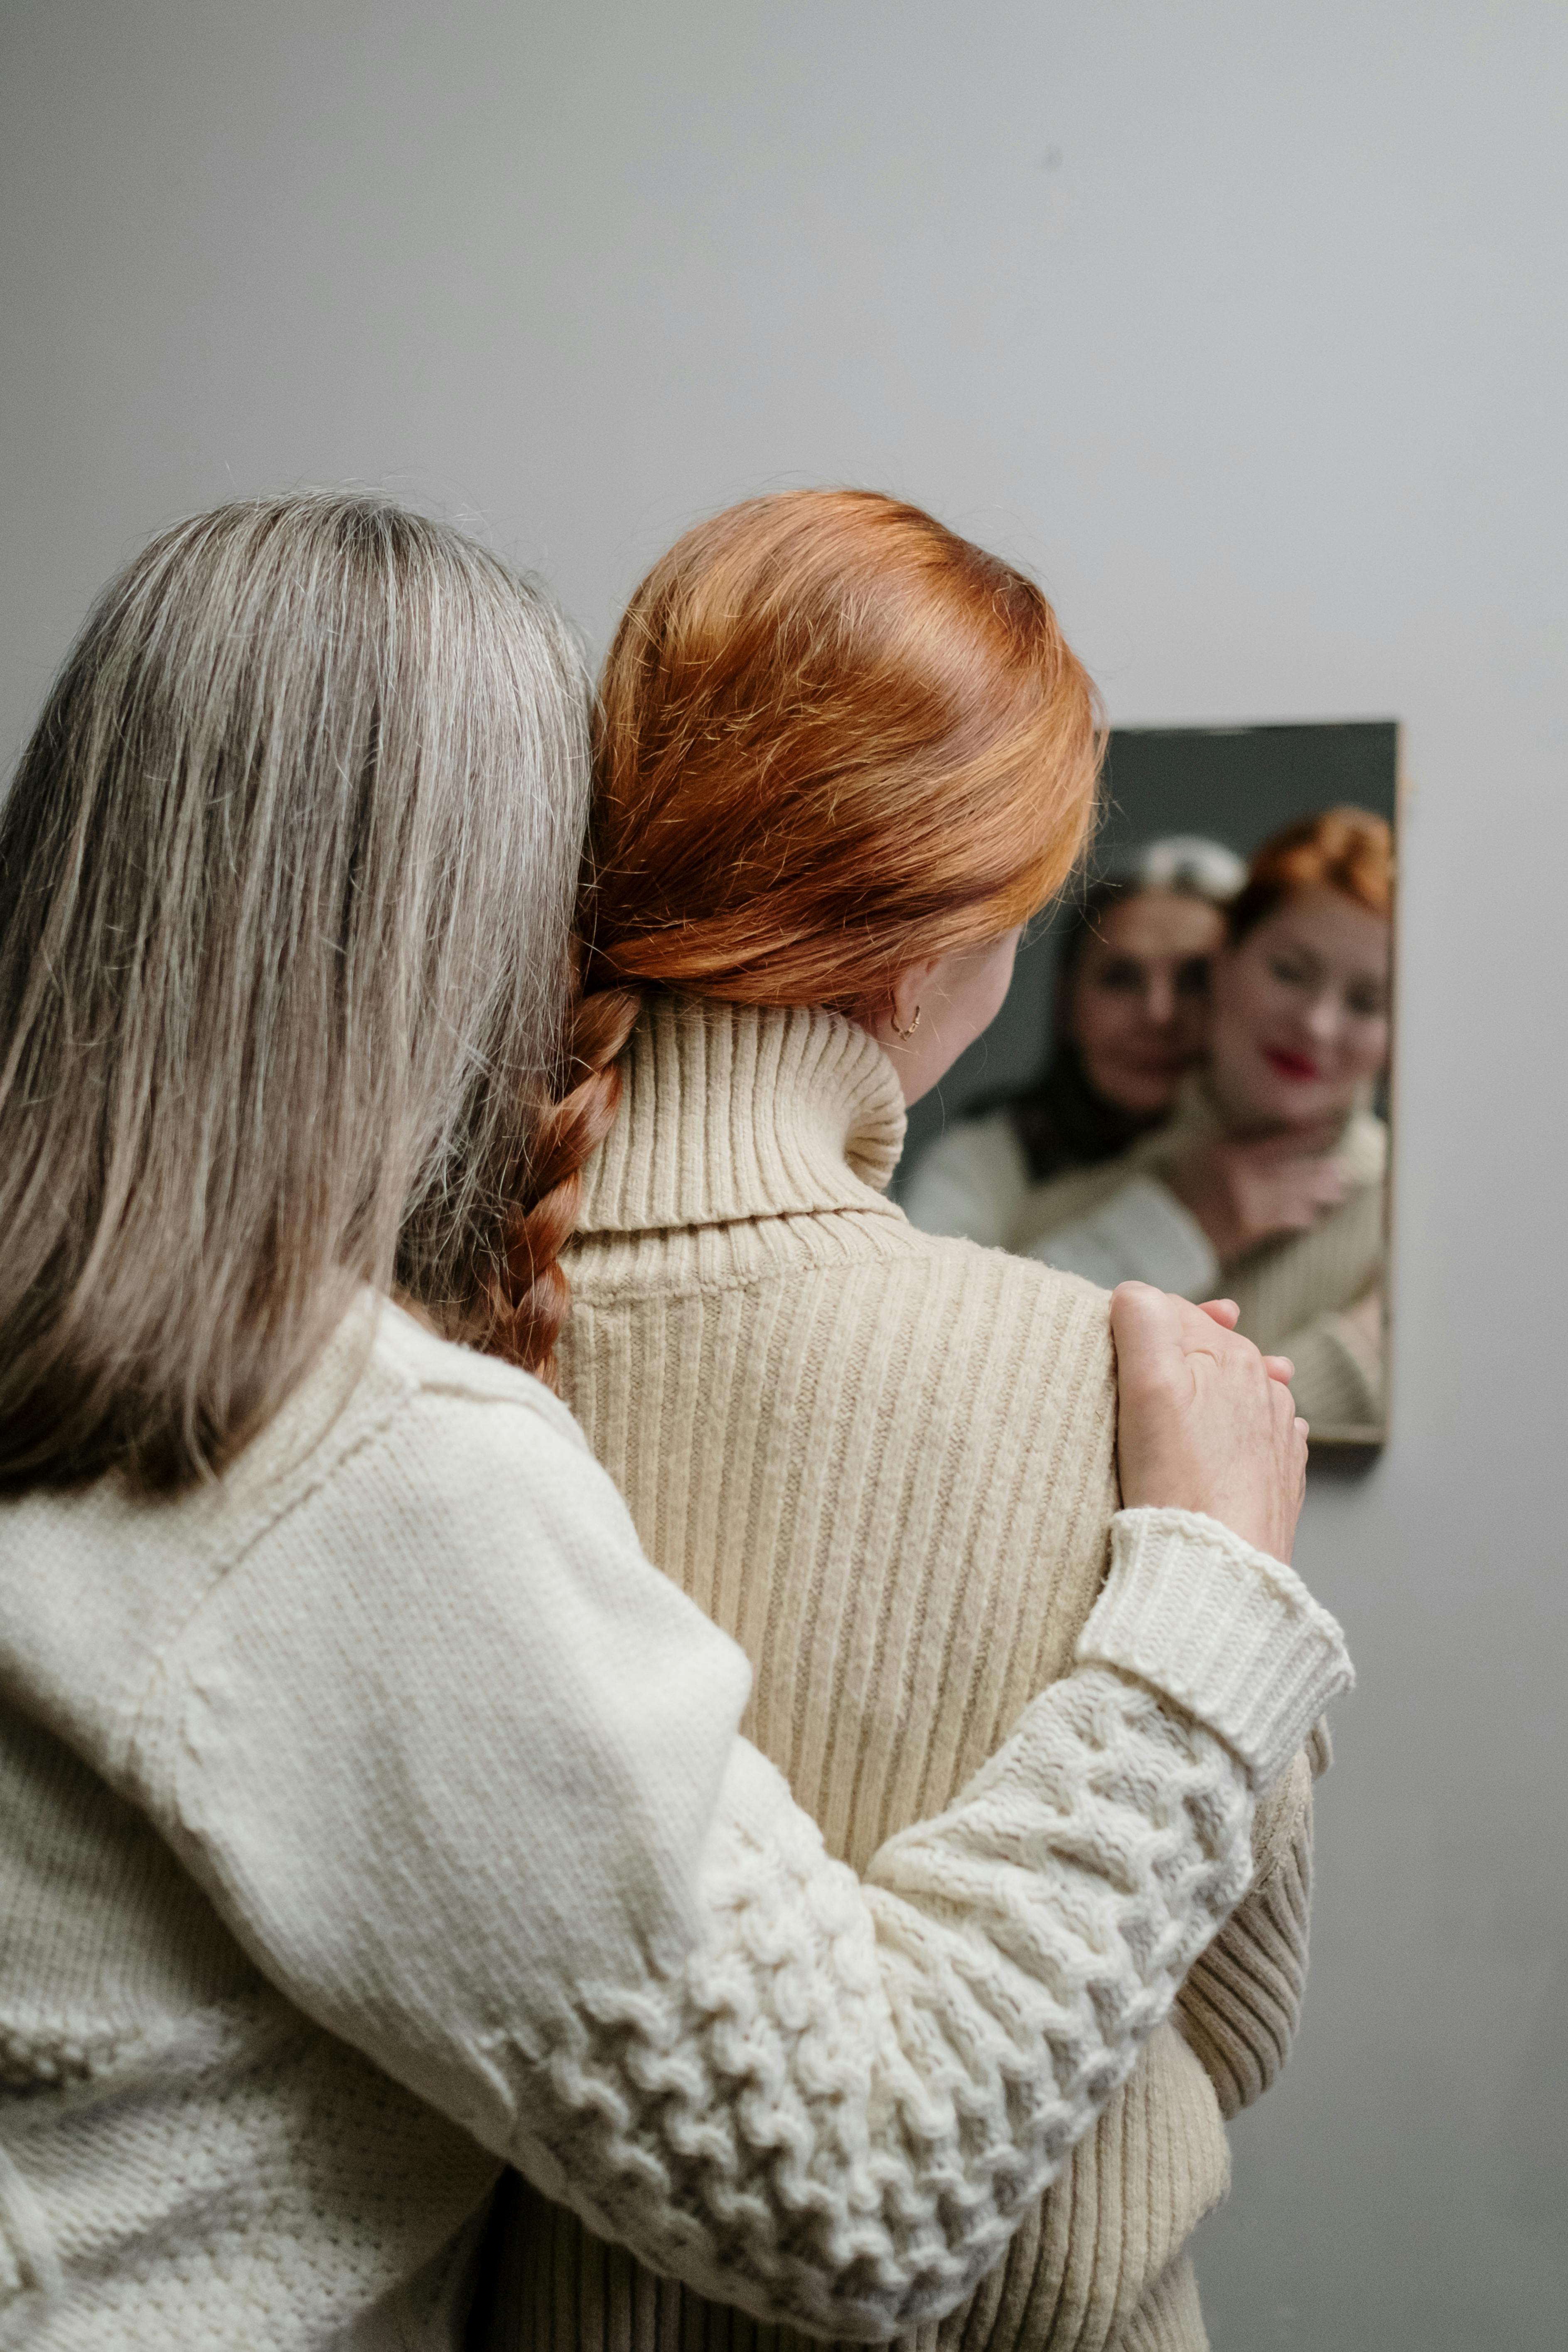 Una mujer mayor abrazando a otra más joven mientras se mira en el espejo | Fuente: Pexels